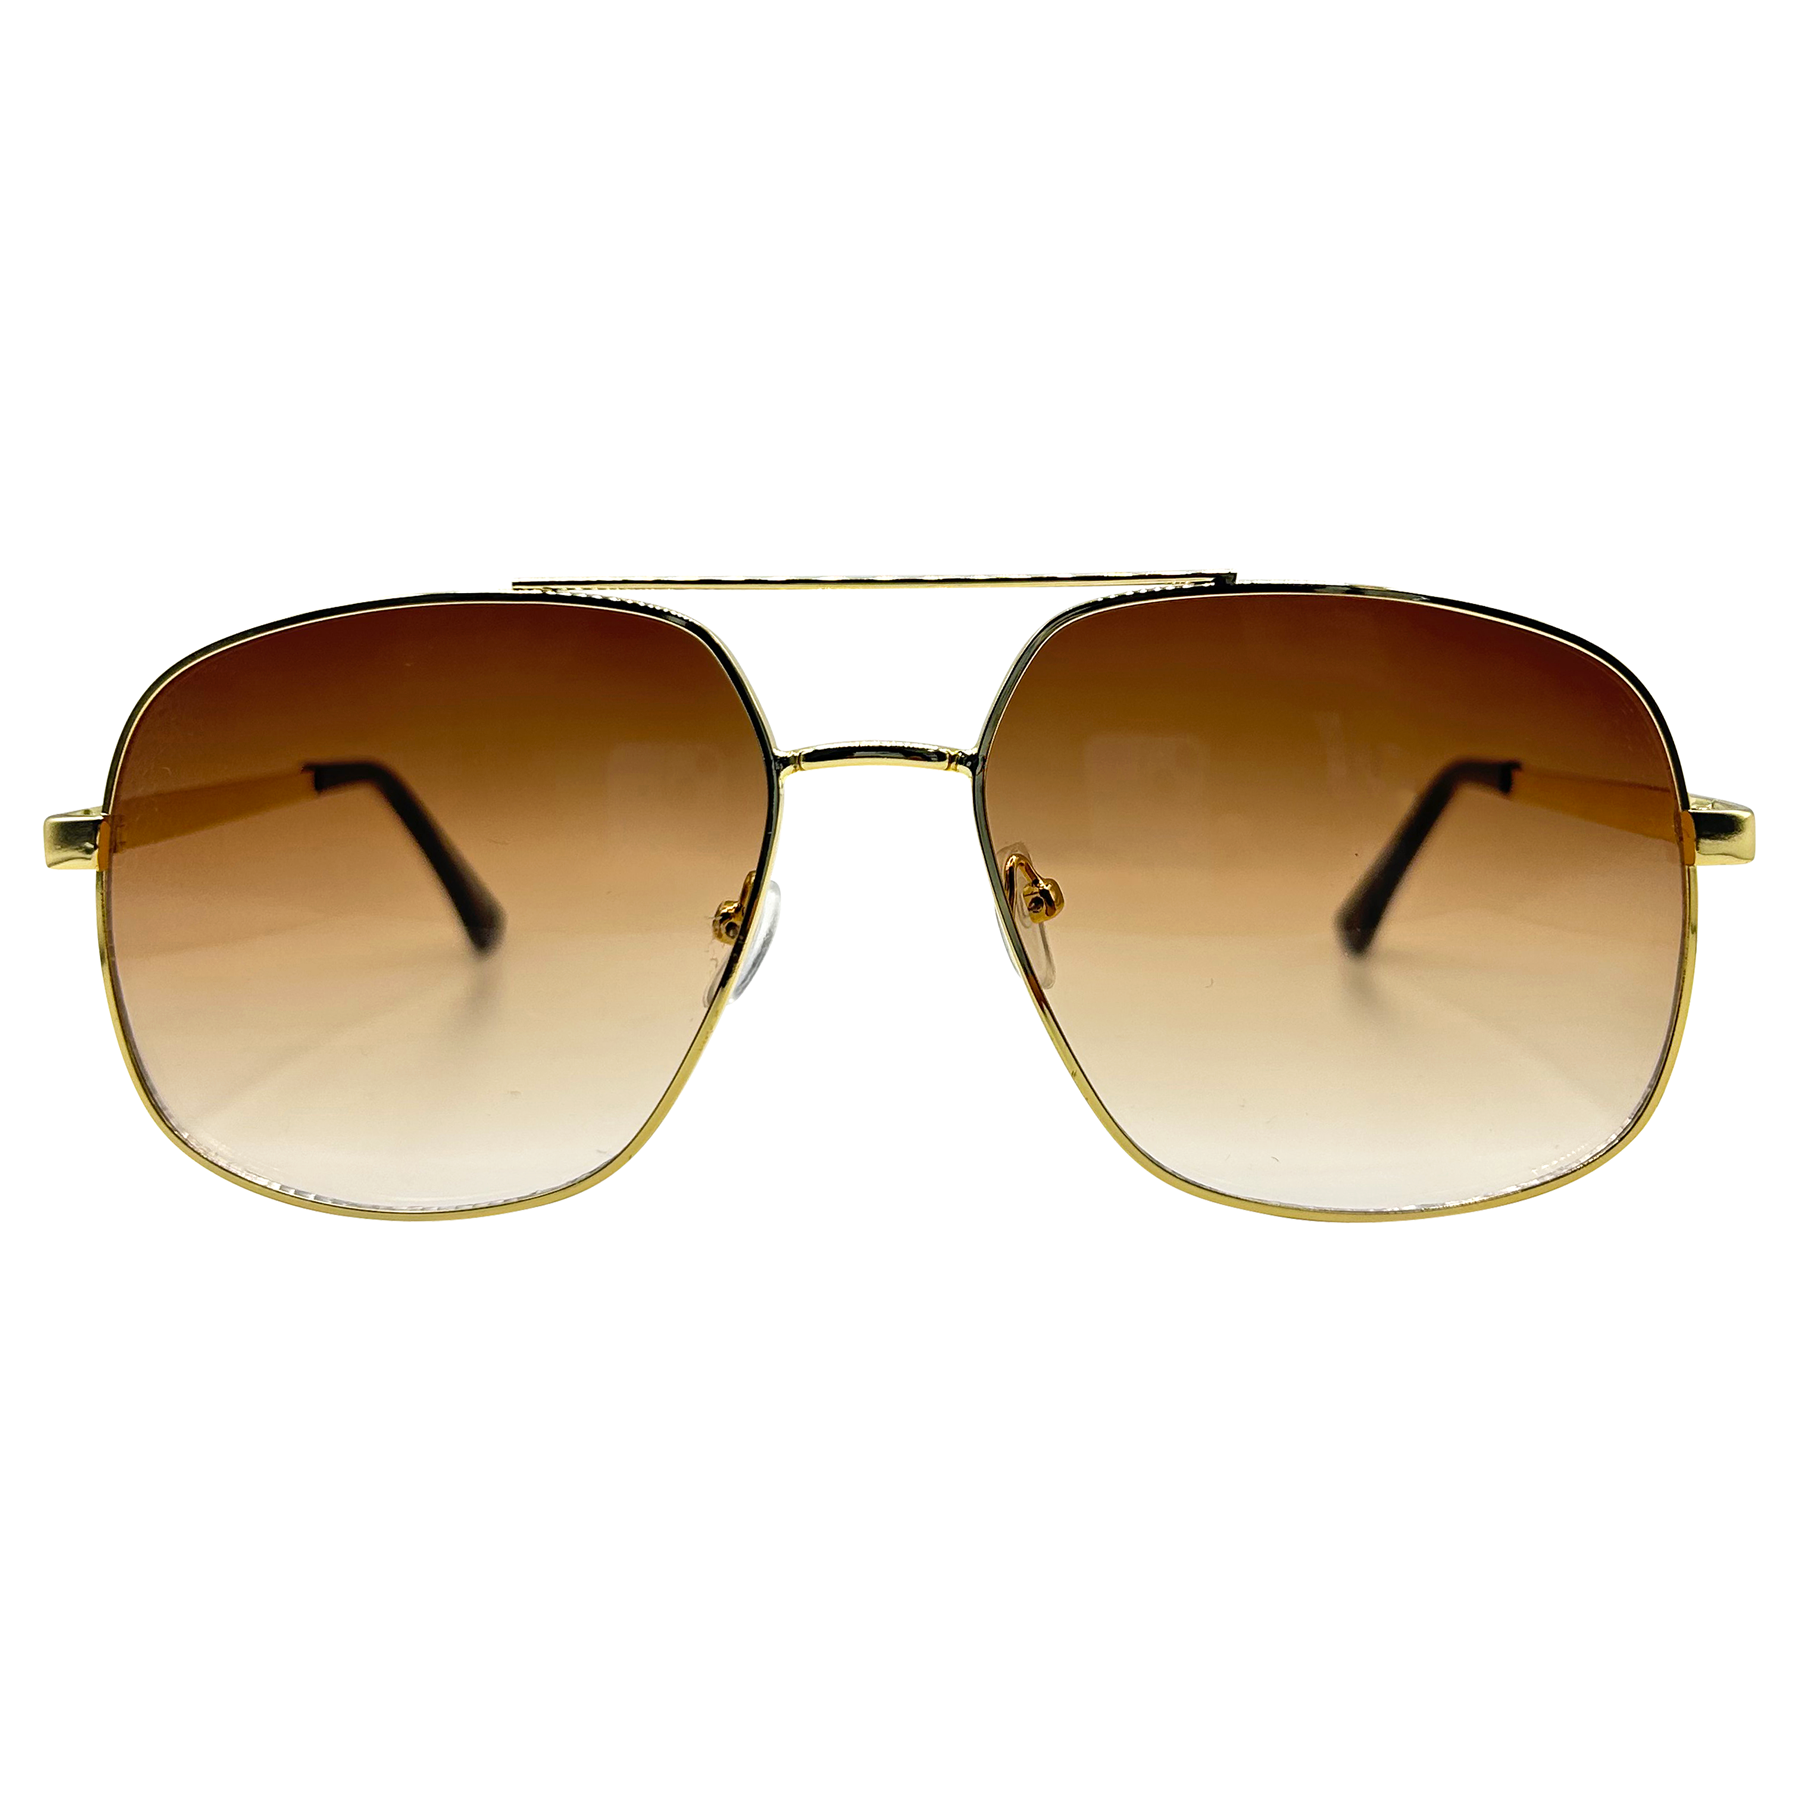 Top 3 Sunglasses Trends for Men in 2023 | Trending sunglasses, Affordable  sunglasses, Sunglasses